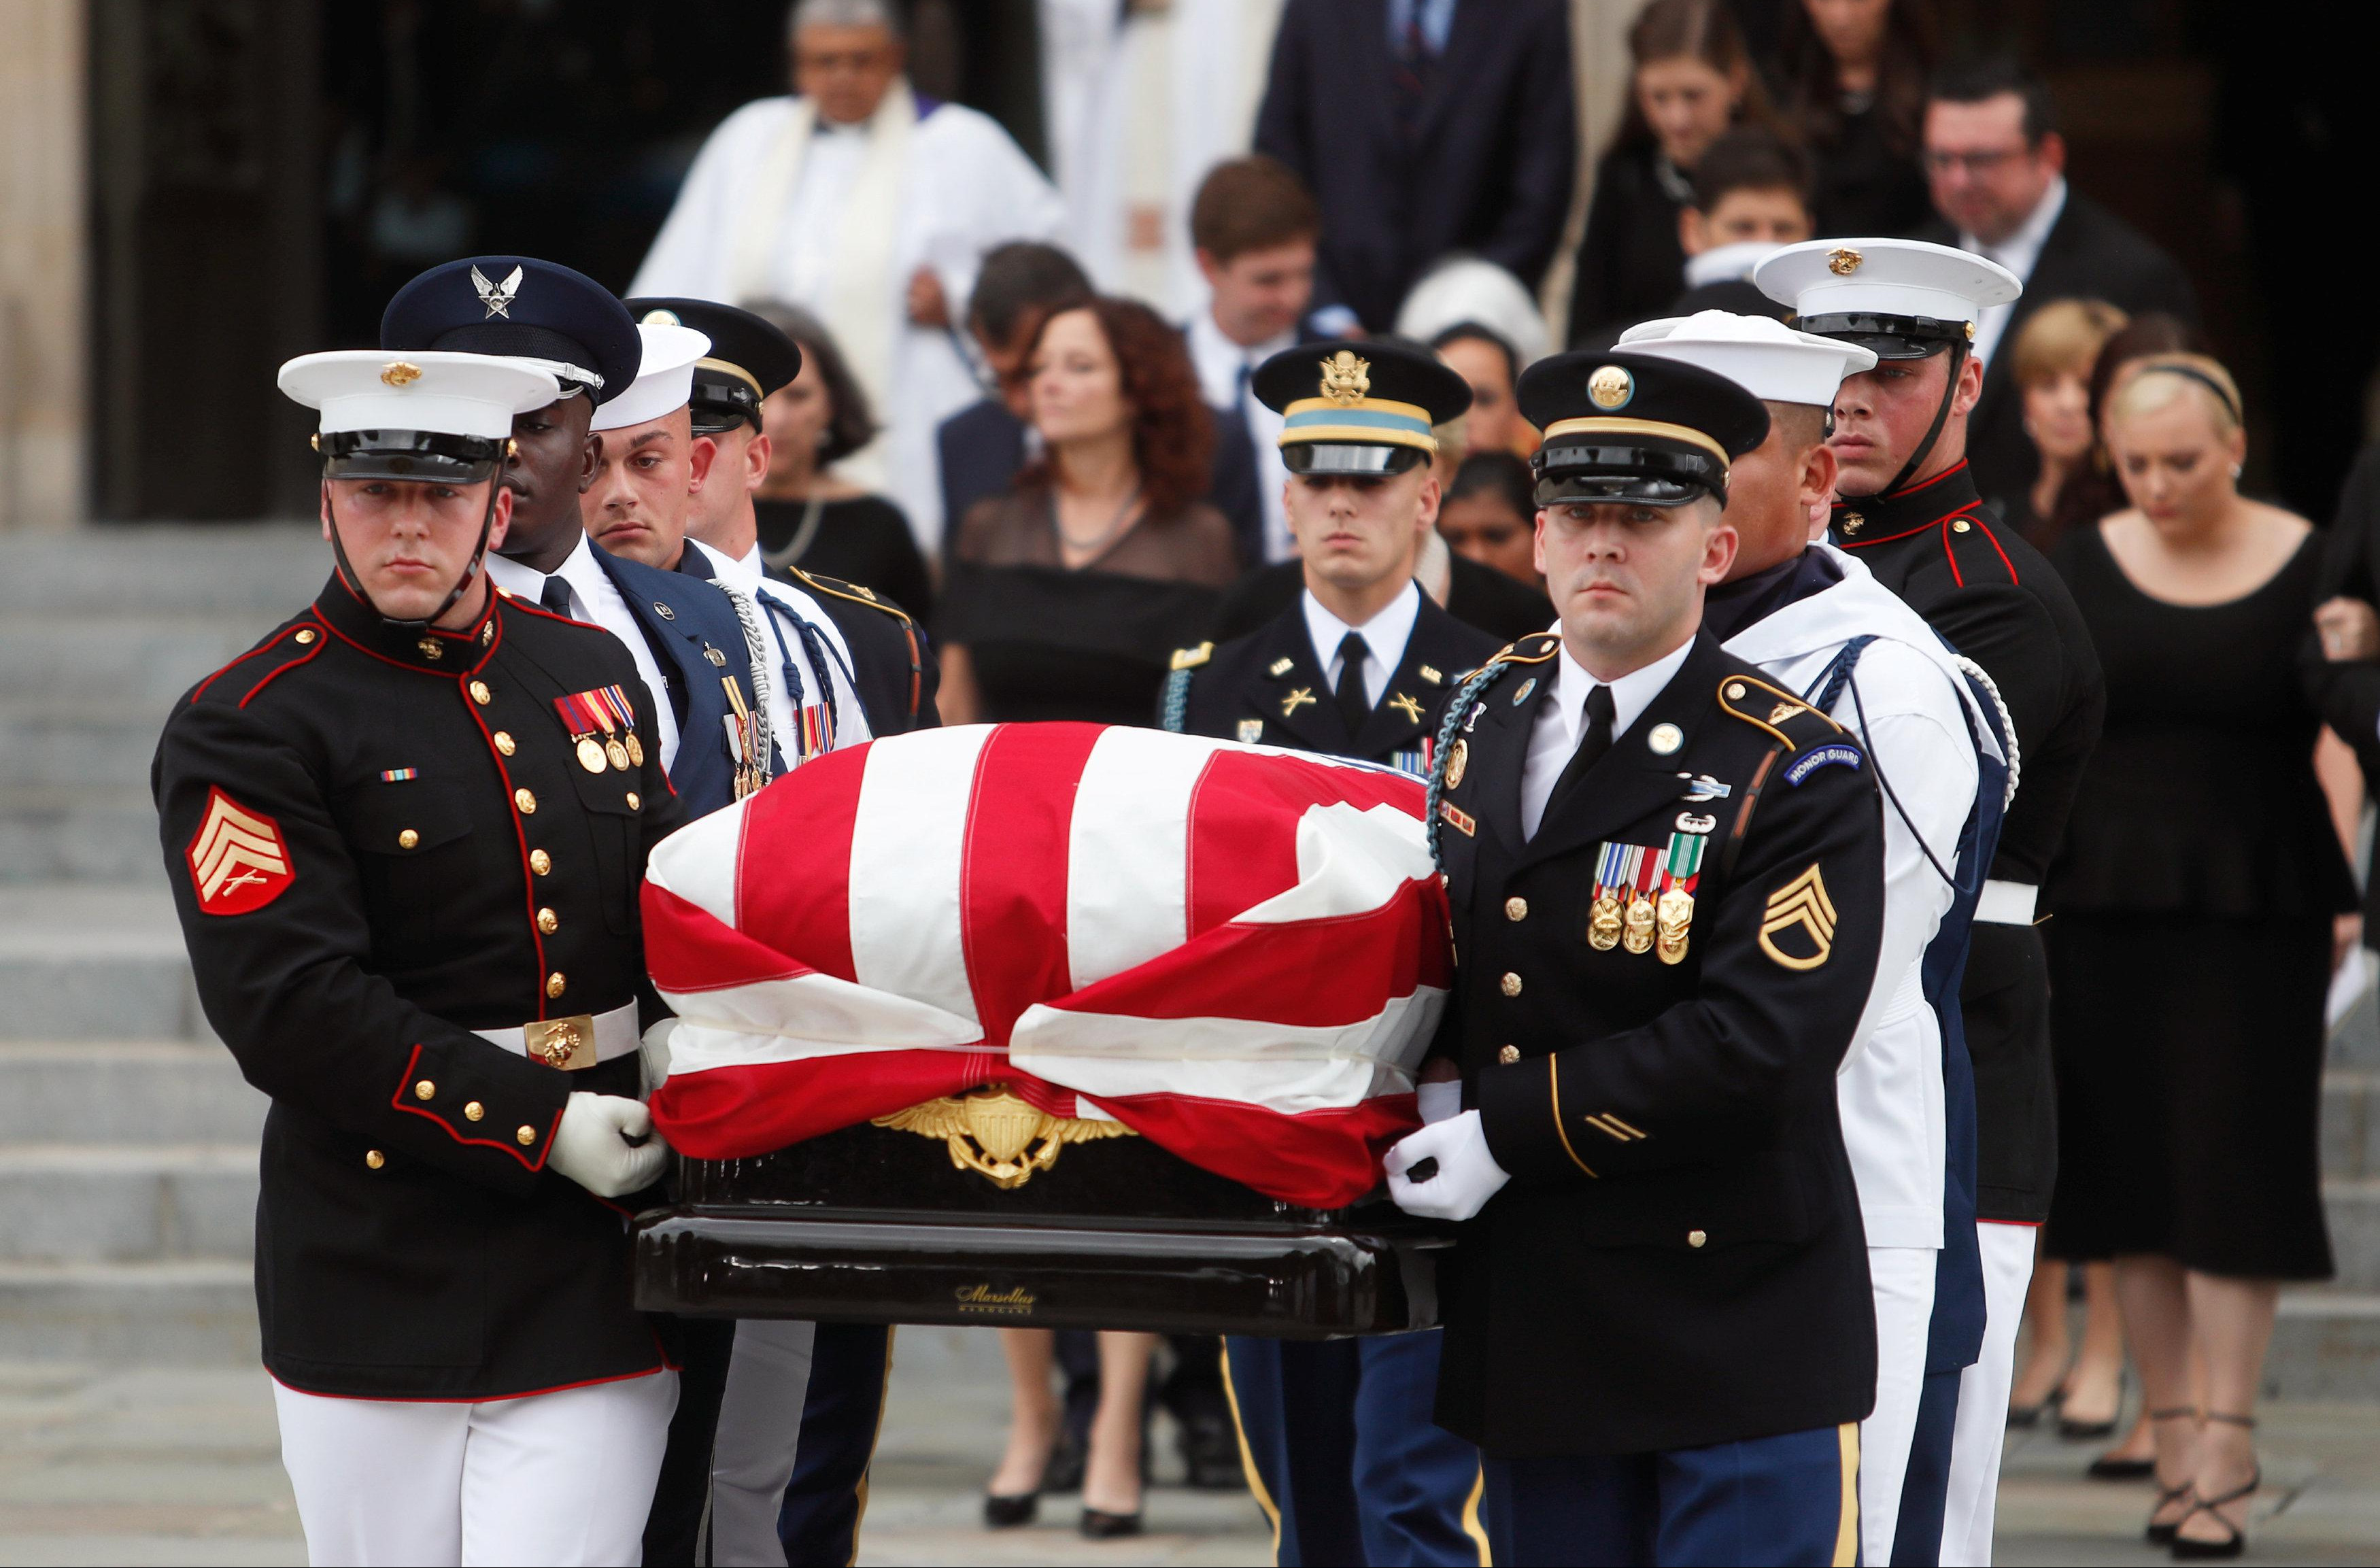 TRAMP IGRAO GOLF DOK SU SAHRANJIVALI DŽONA MEKEJNA! Američki senator tražio da Buš i Obama govore na sahrani